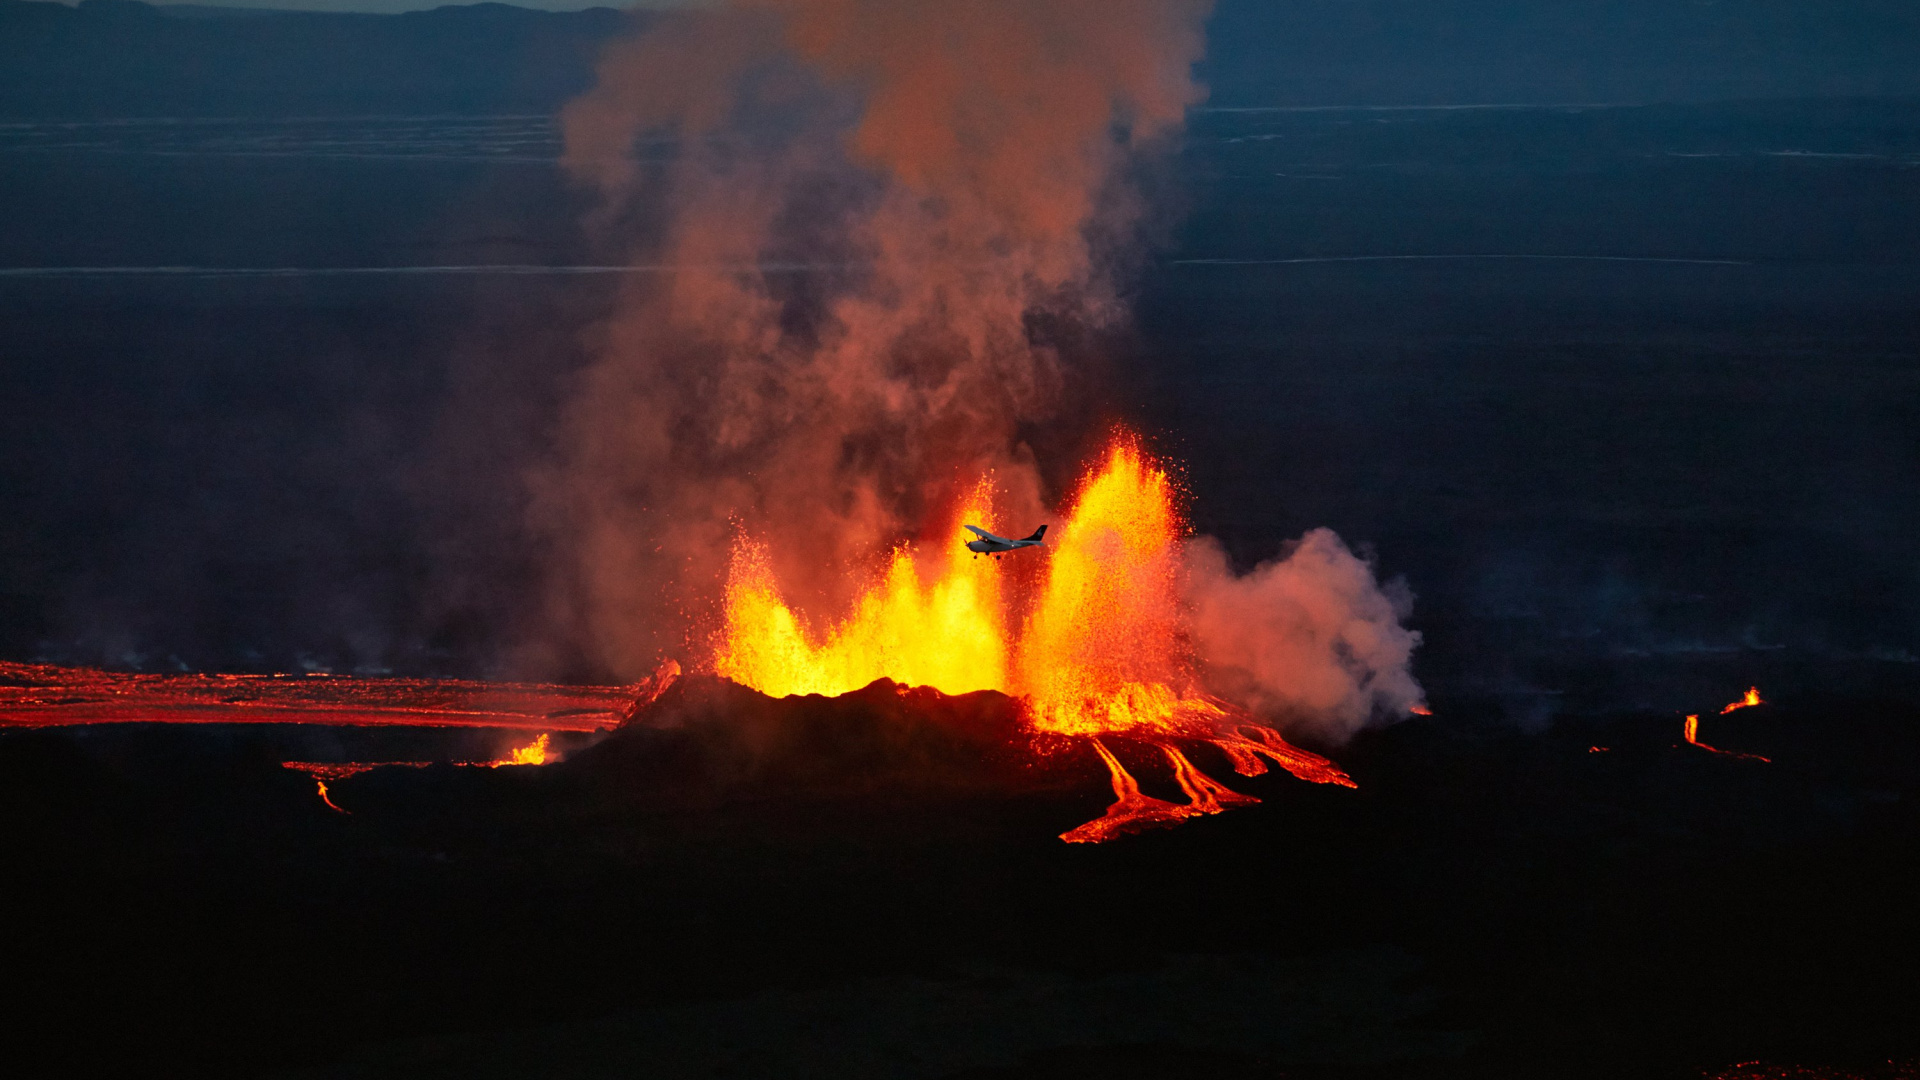 Holuhraun, 热, 火山的地貌, 卡特拉, 屏蔽火山 壁纸 1920x1080 允许